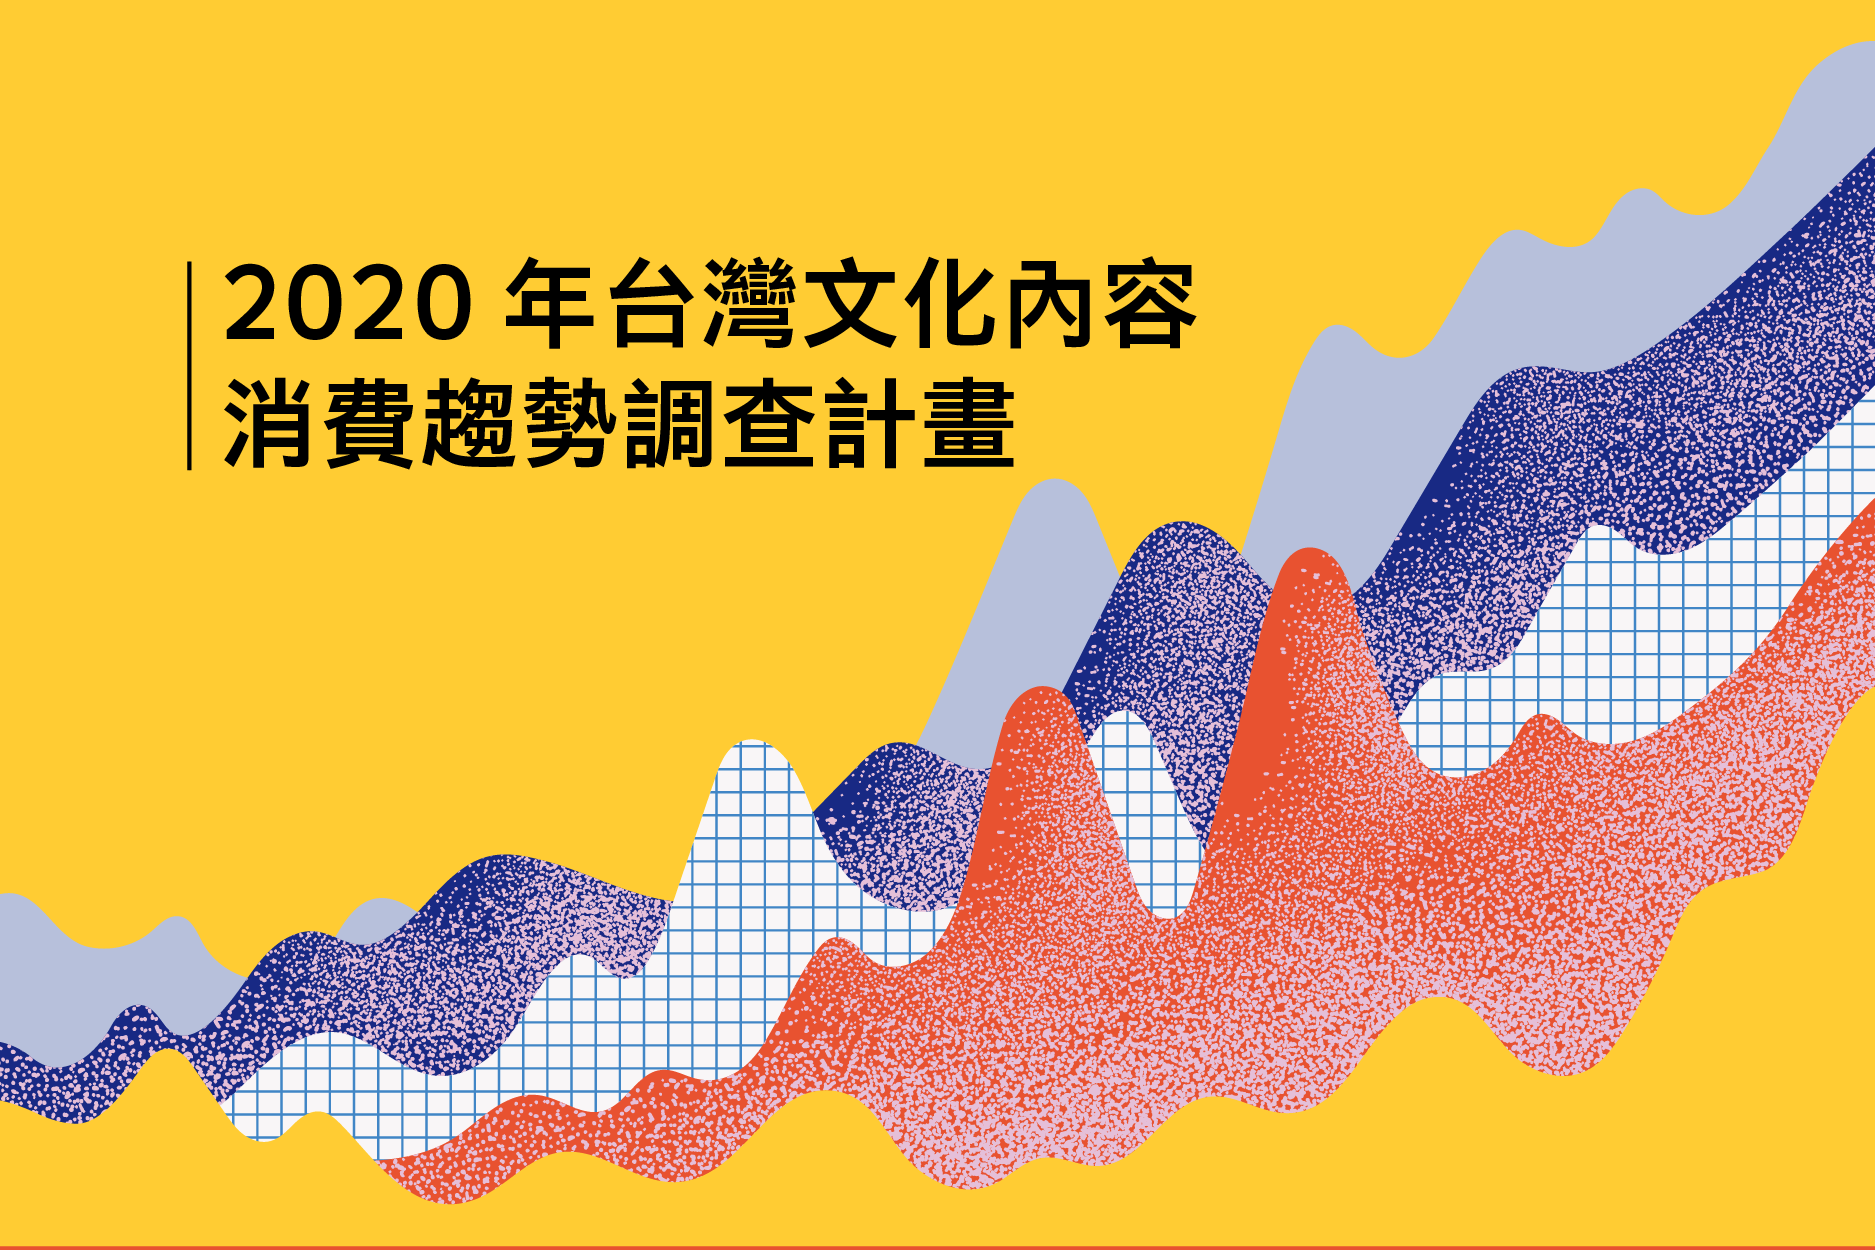 2020 年台灣文化內容消費趨勢調查計畫